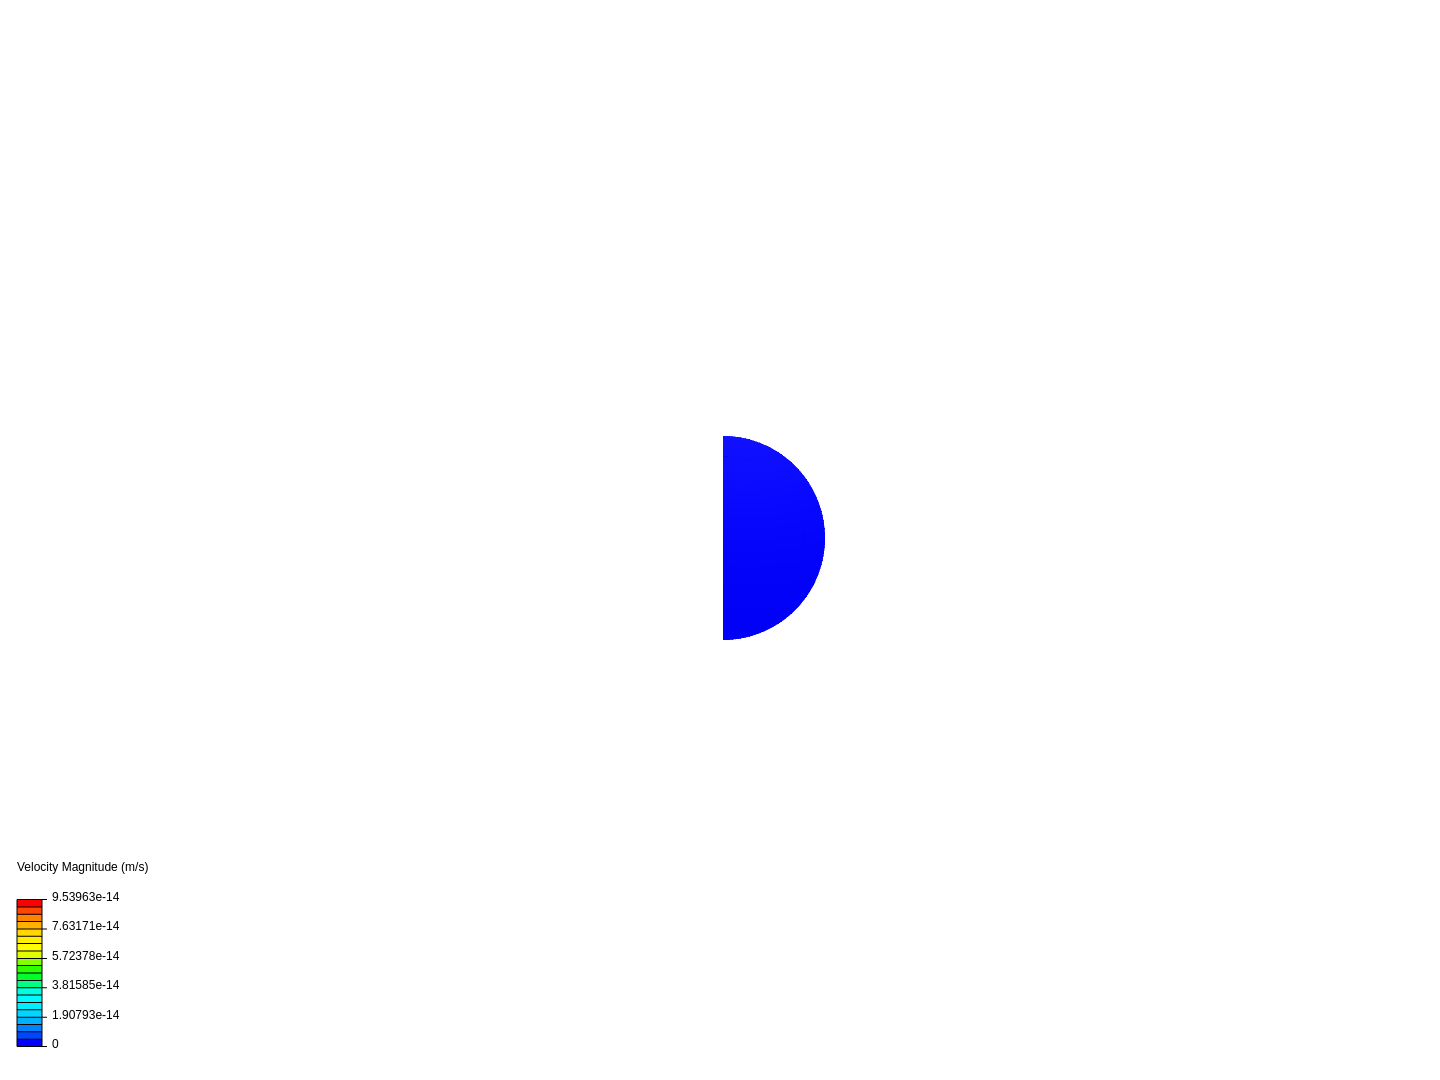 Variation de la température dans un cylindre quasi fermé rempli d'eau et exposé aux rayons de soleil image